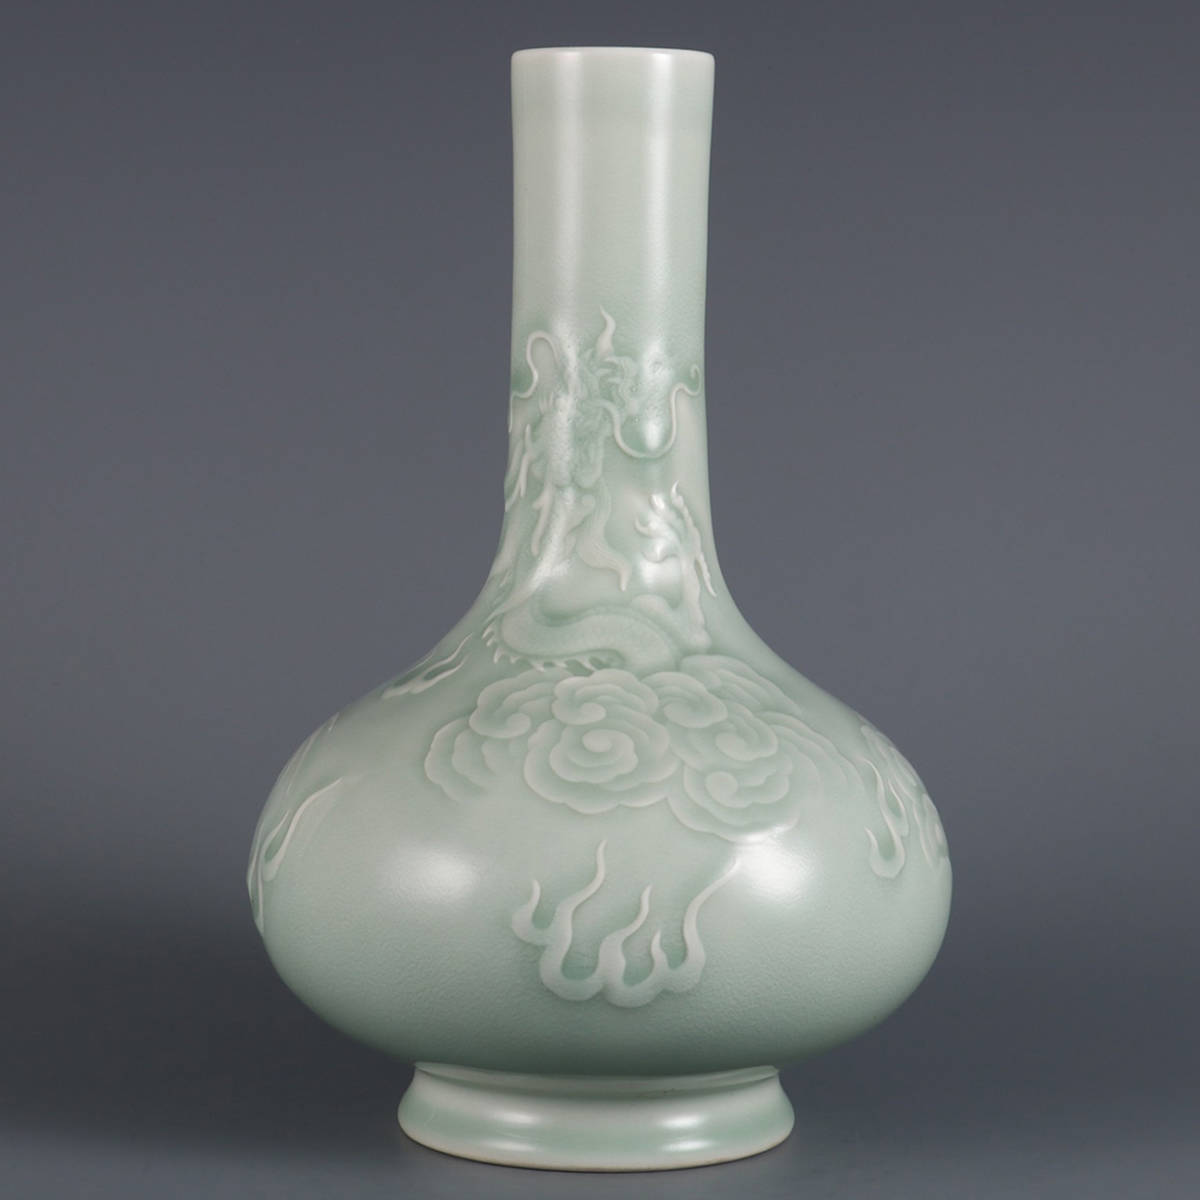 100%正規品 乾隆年製款 陶磁器 ▽鴻▽清朝時代 豆青釉彫刻雲龍紋胆瓶